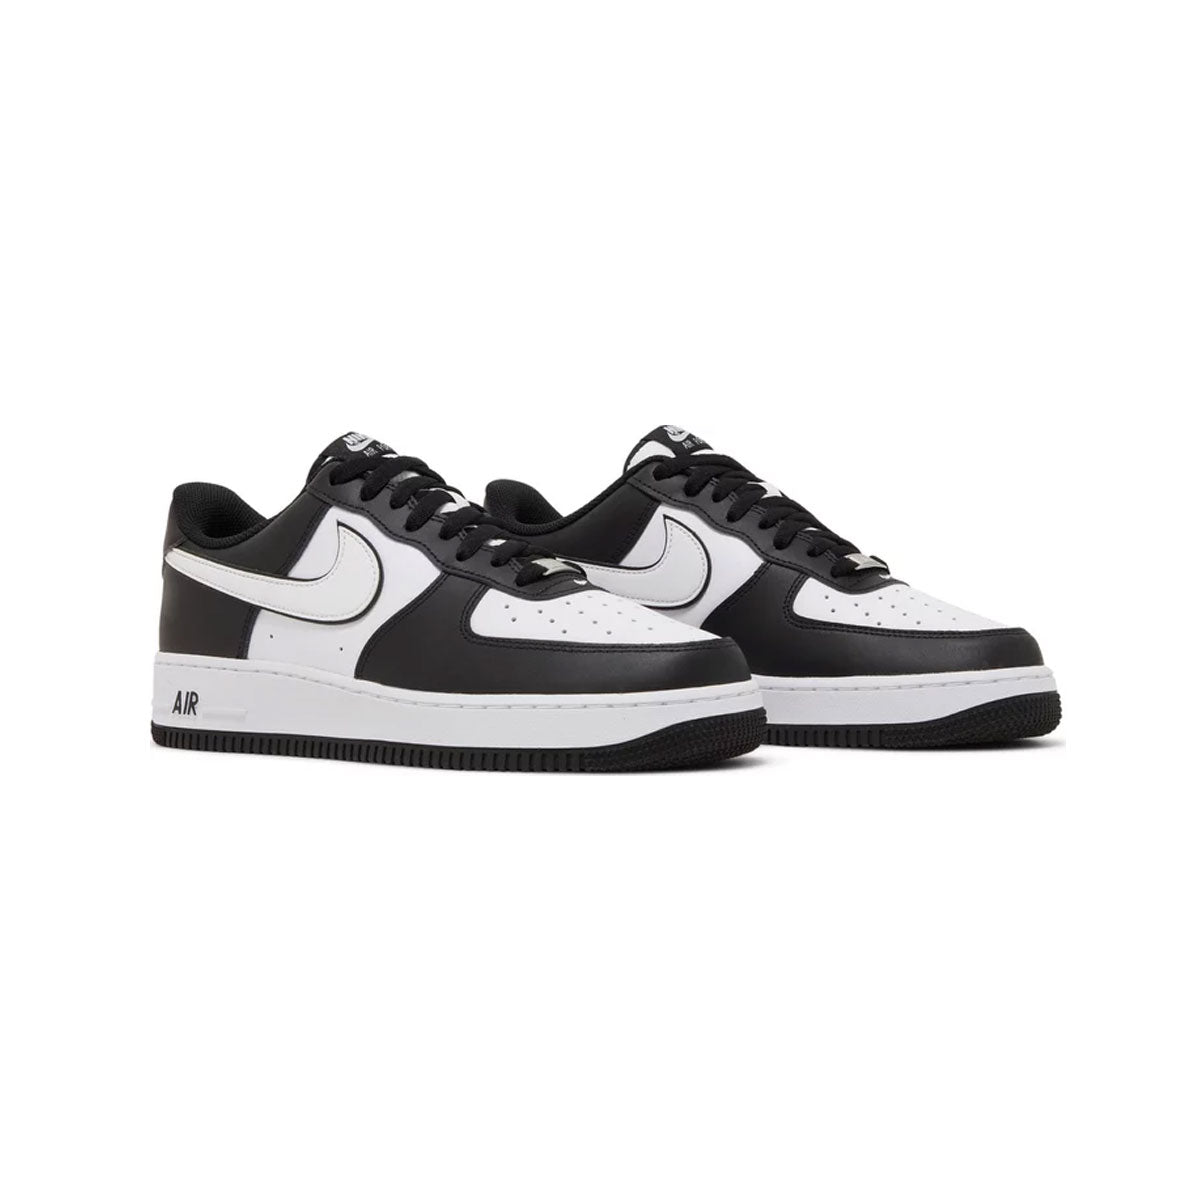 Nike Air Force 1 Low “Panda”